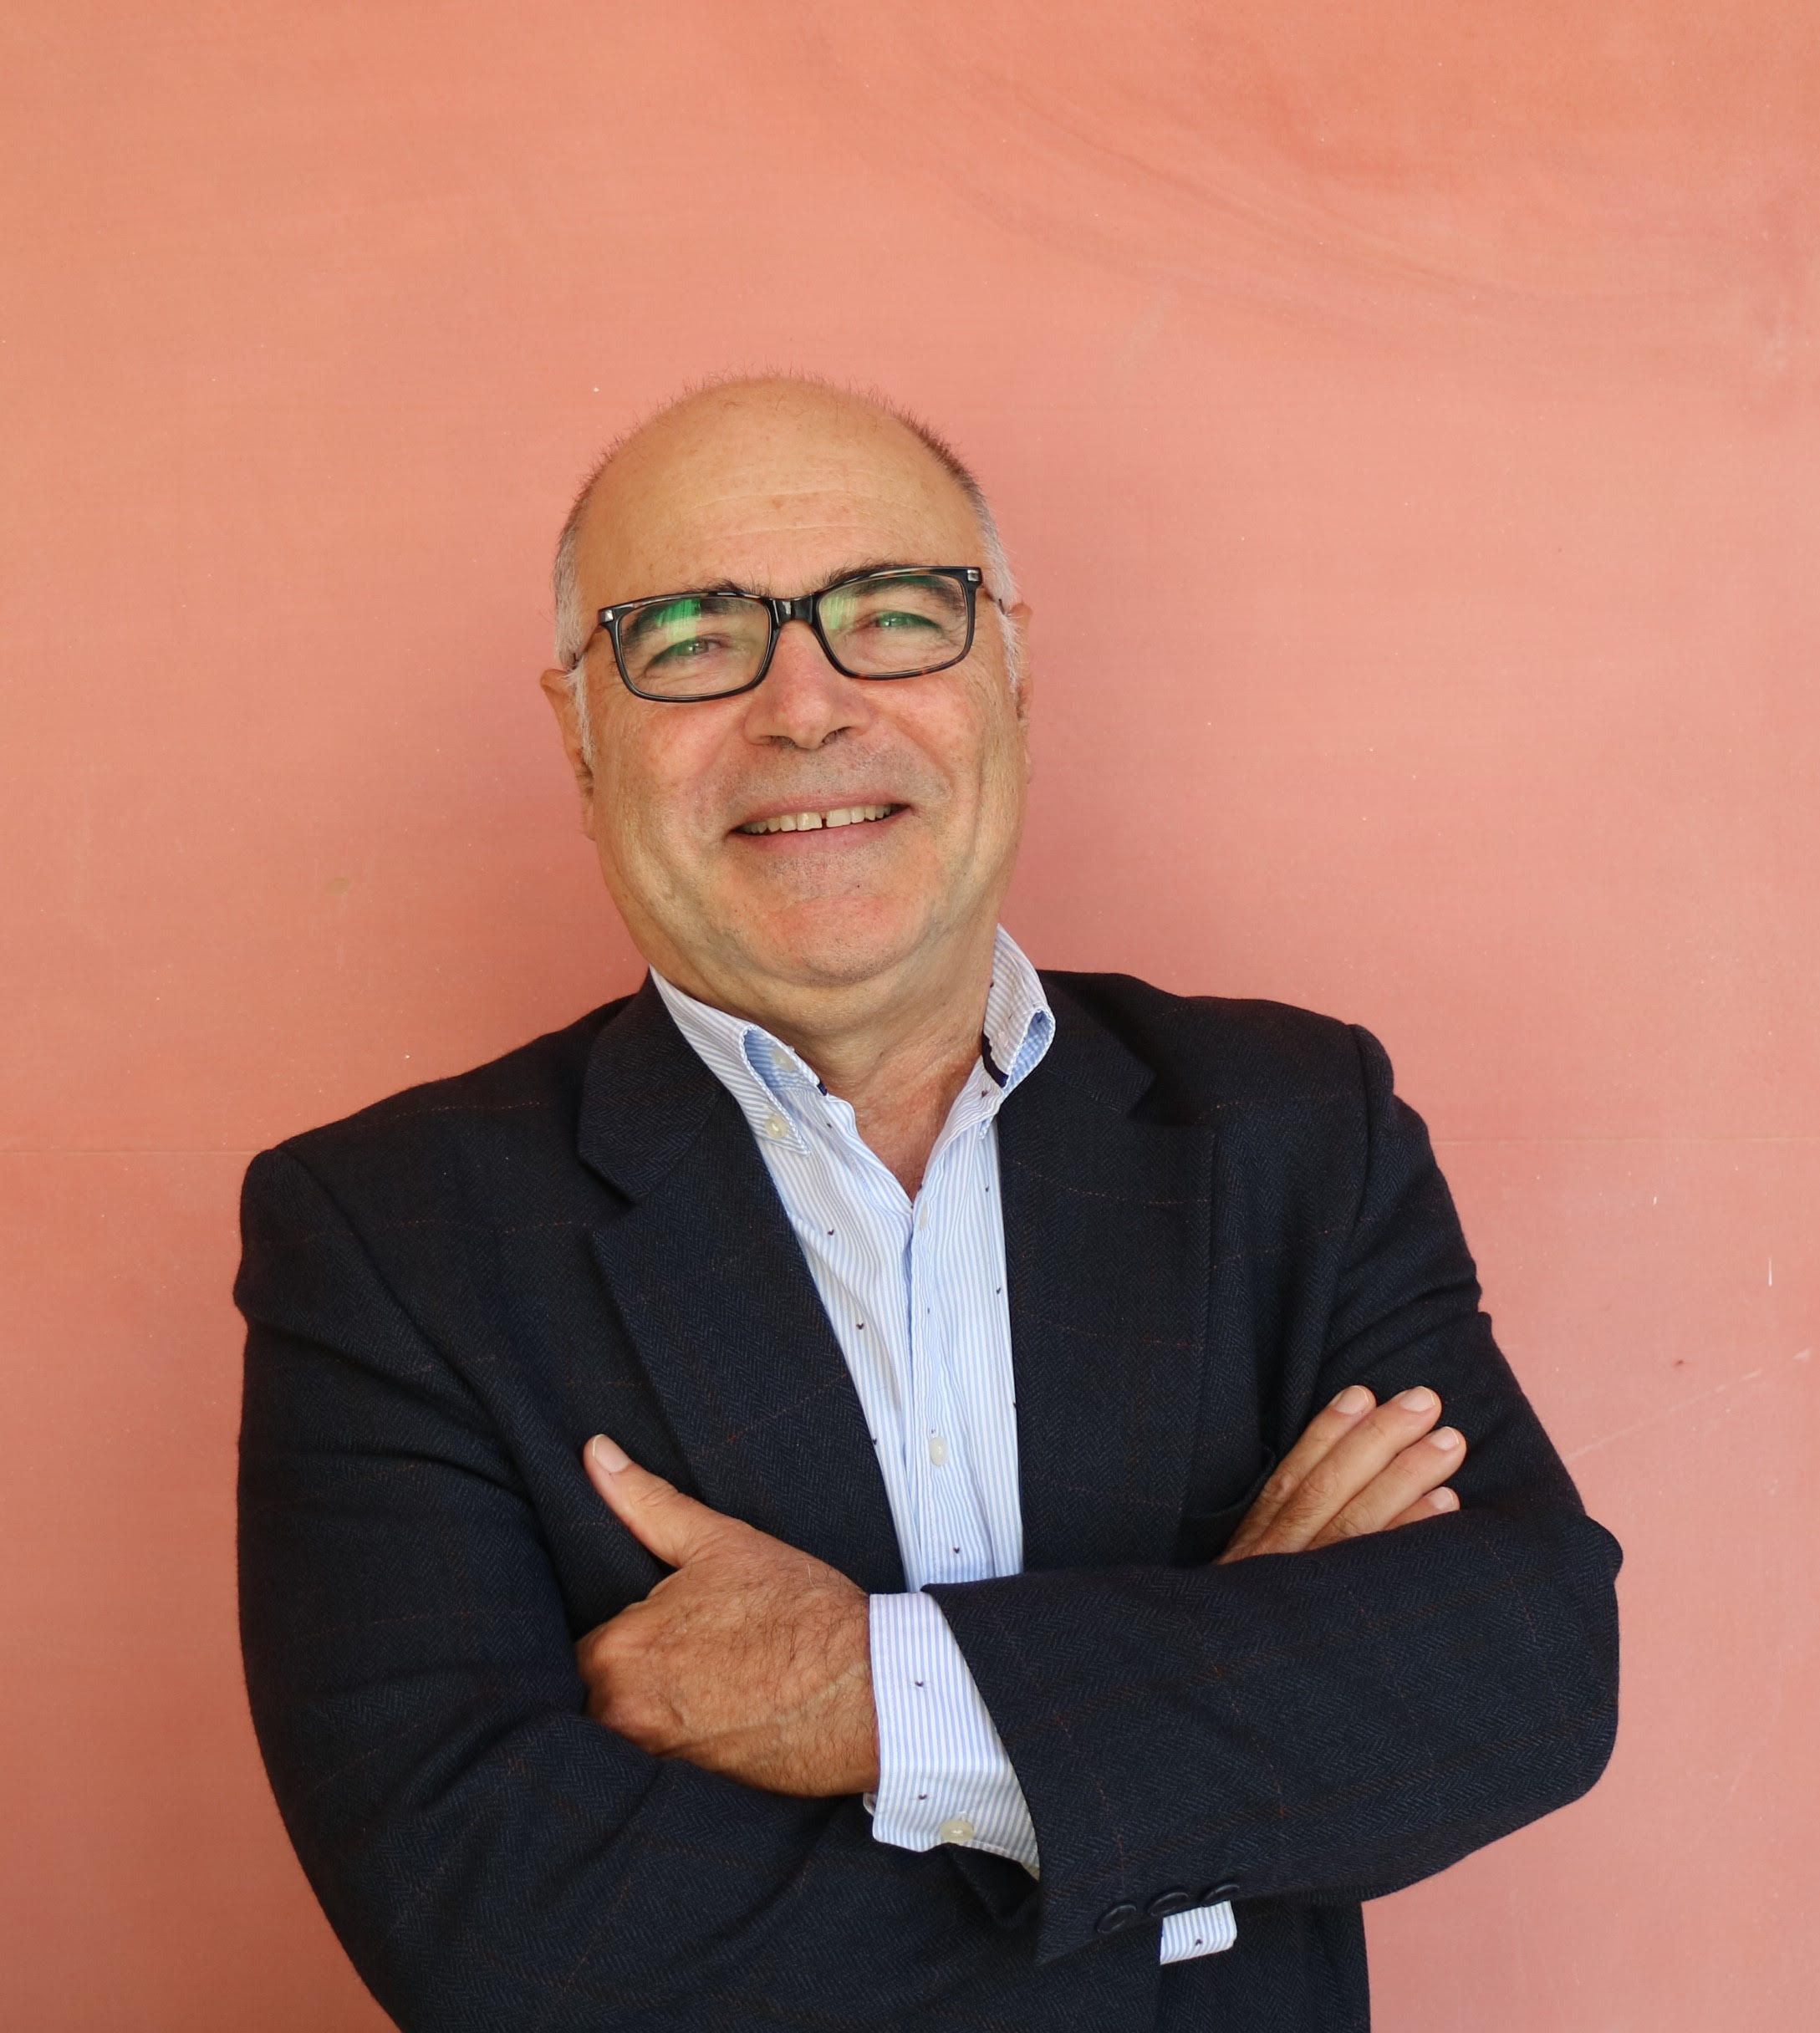 Profesor Manuel Cebrián de la Serna, Catedrático de Tecnología Educativa en el departamento de Didáctica y Organización Escolar de la Universidad de Málaga.